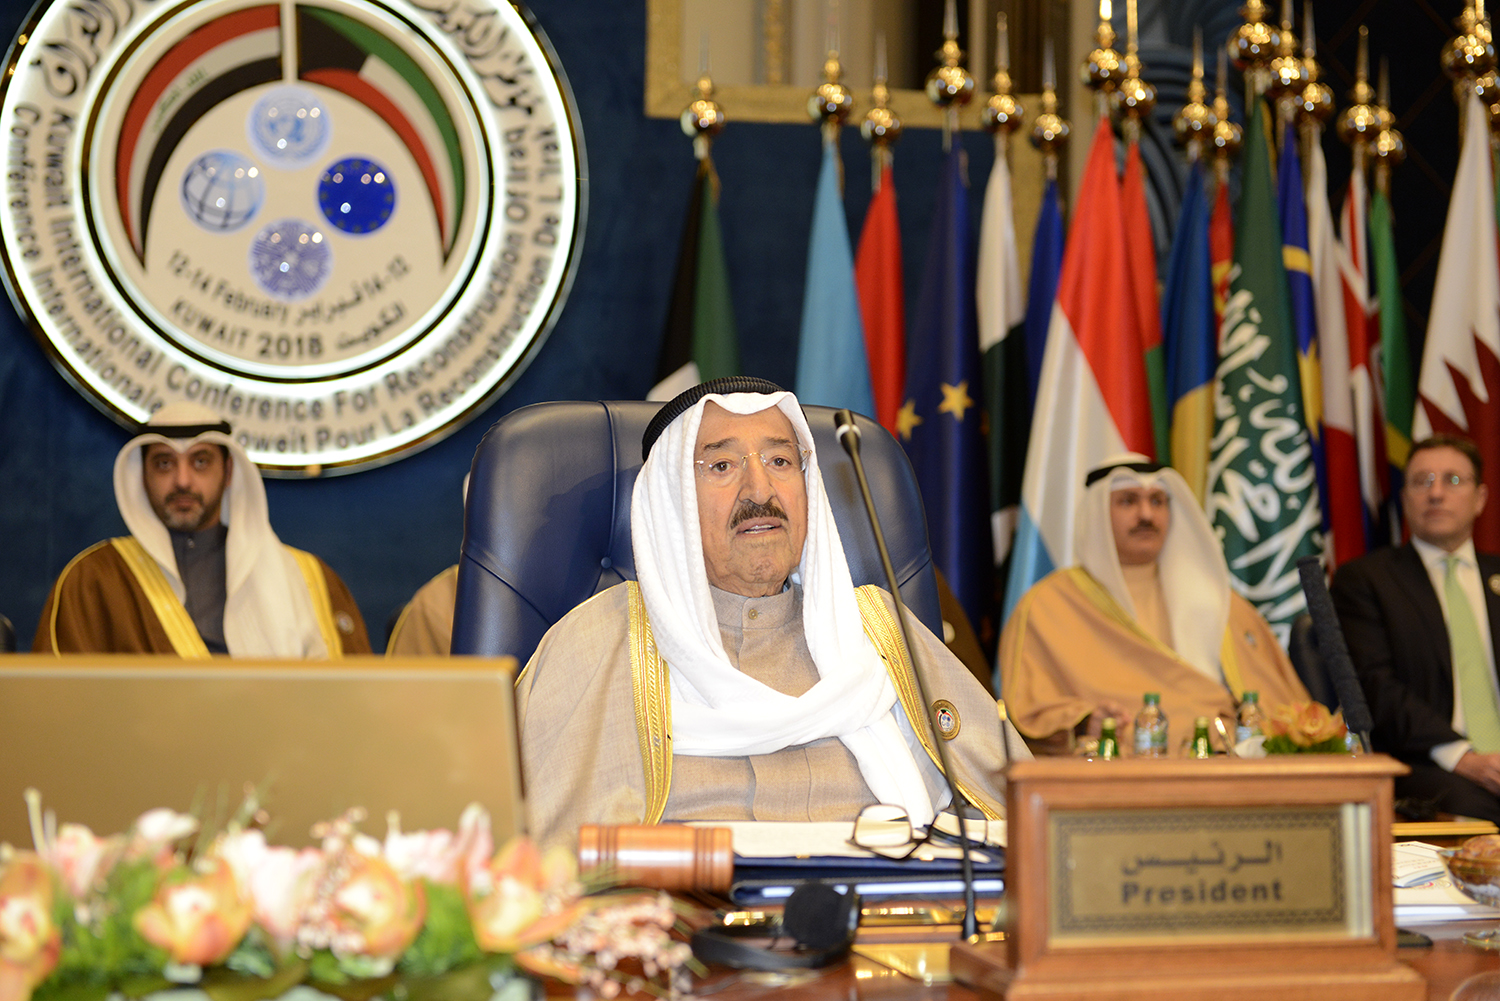 سمو الأمير الشيخ صباح الأحمد الجابر الصباح بافتتاح مؤتمر الكويت الدولي لإعادة إعمار العراق عام 2018